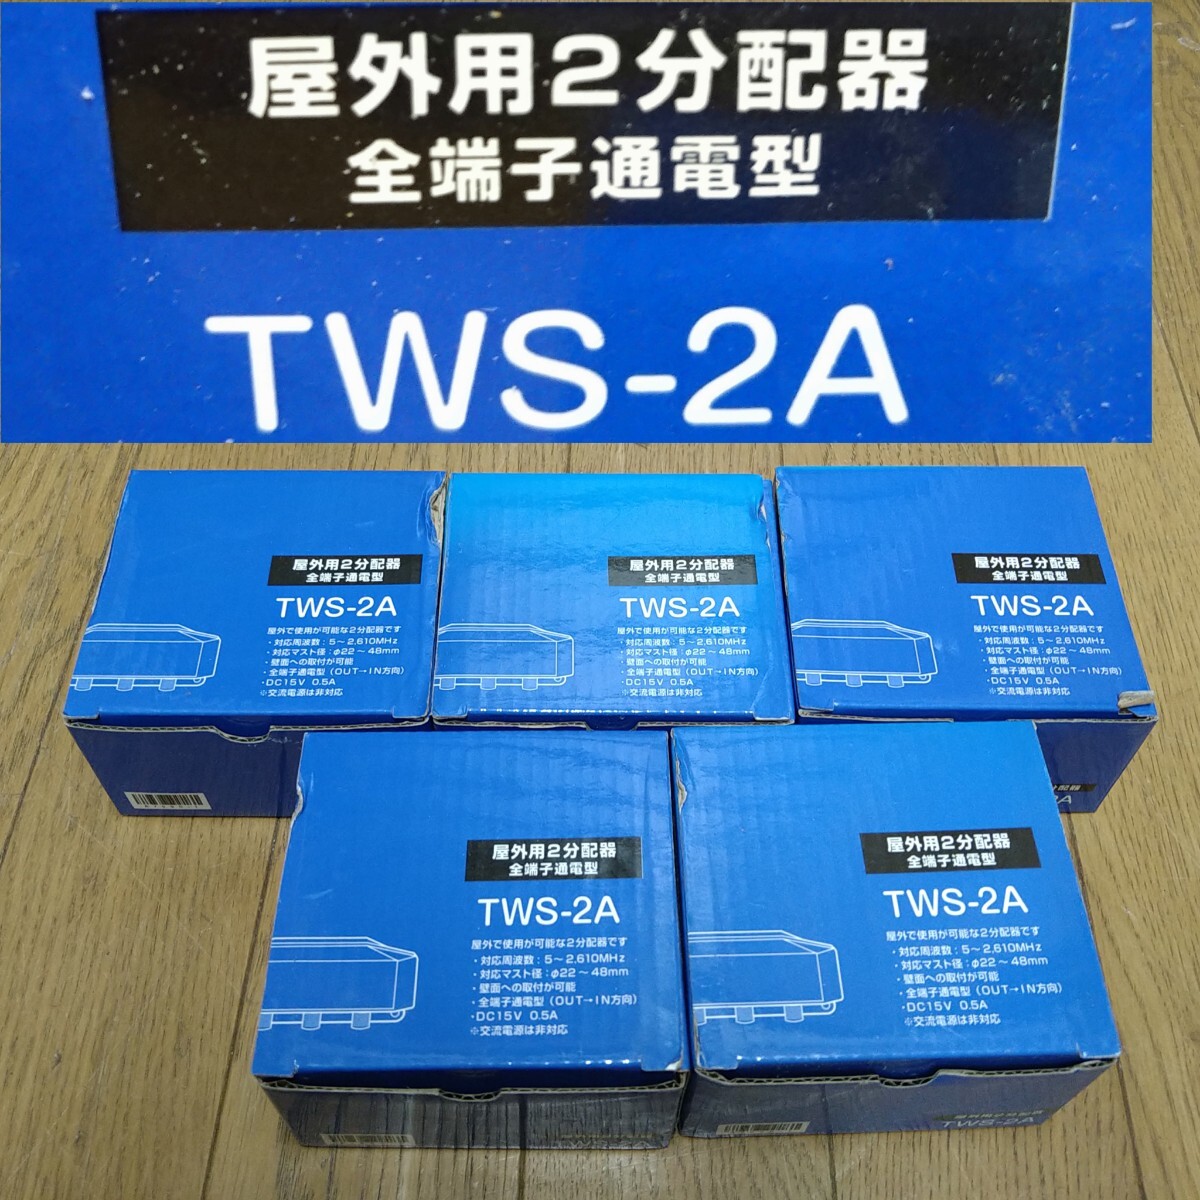 AC85 дистрибьютор TWS-2A 5 коробка нераспечатанный не использовался наружный для 2 дистрибьютор все терминал электризация type 